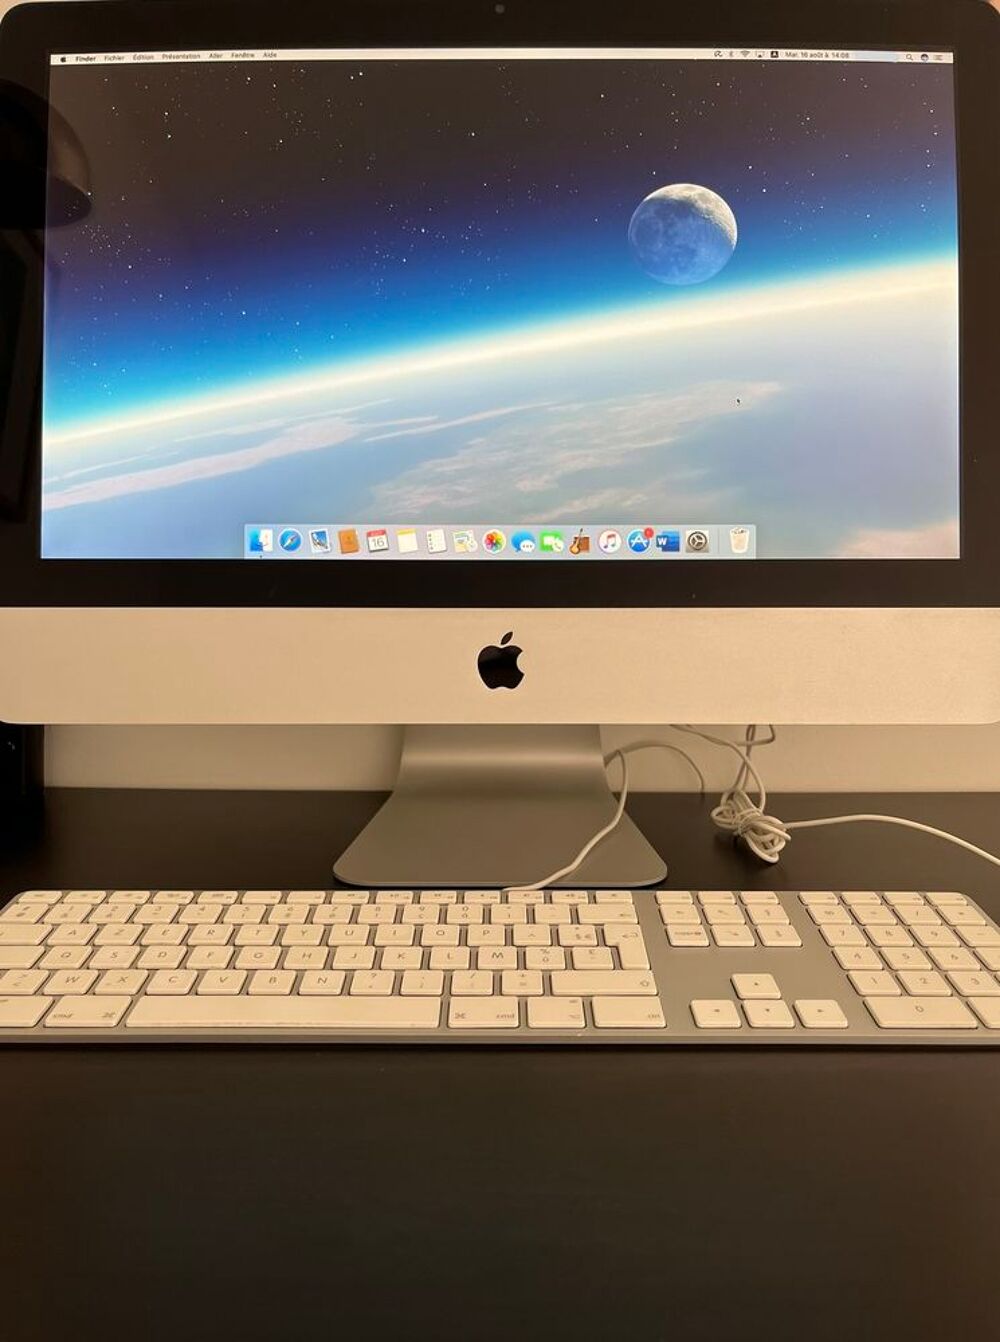 iMac 21.5&quot; mi-2011
Matriel informatique